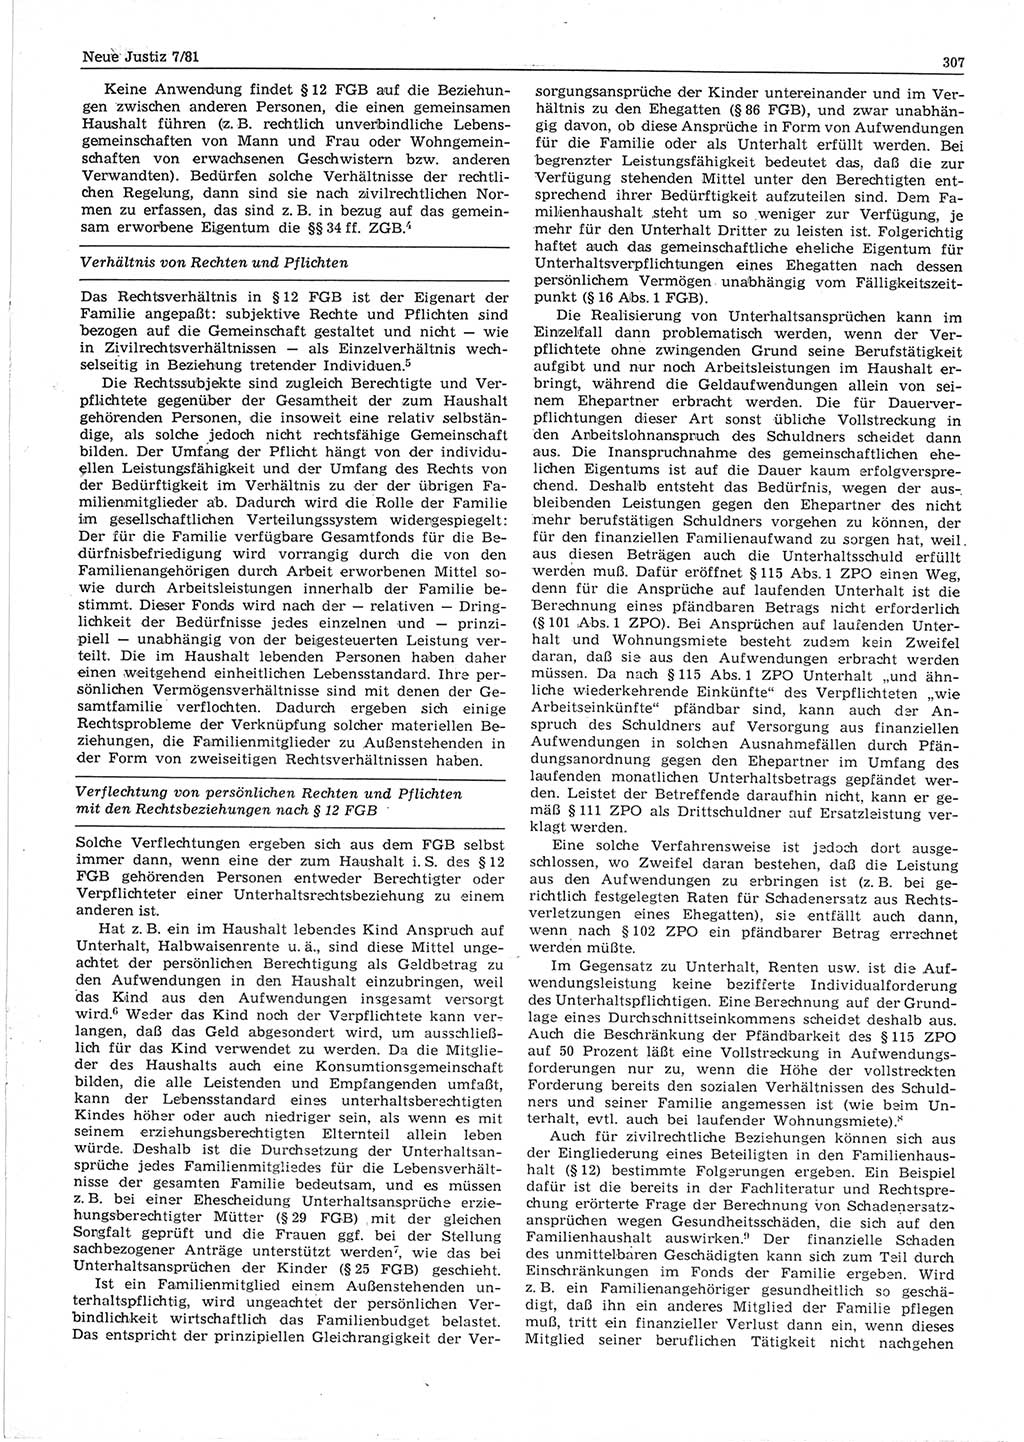 Neue Justiz (NJ), Zeitschrift für sozialistisches Recht und Gesetzlichkeit [Deutsche Demokratische Republik (DDR)], 35. Jahrgang 1981, Seite 307 (NJ DDR 1981, S. 307)